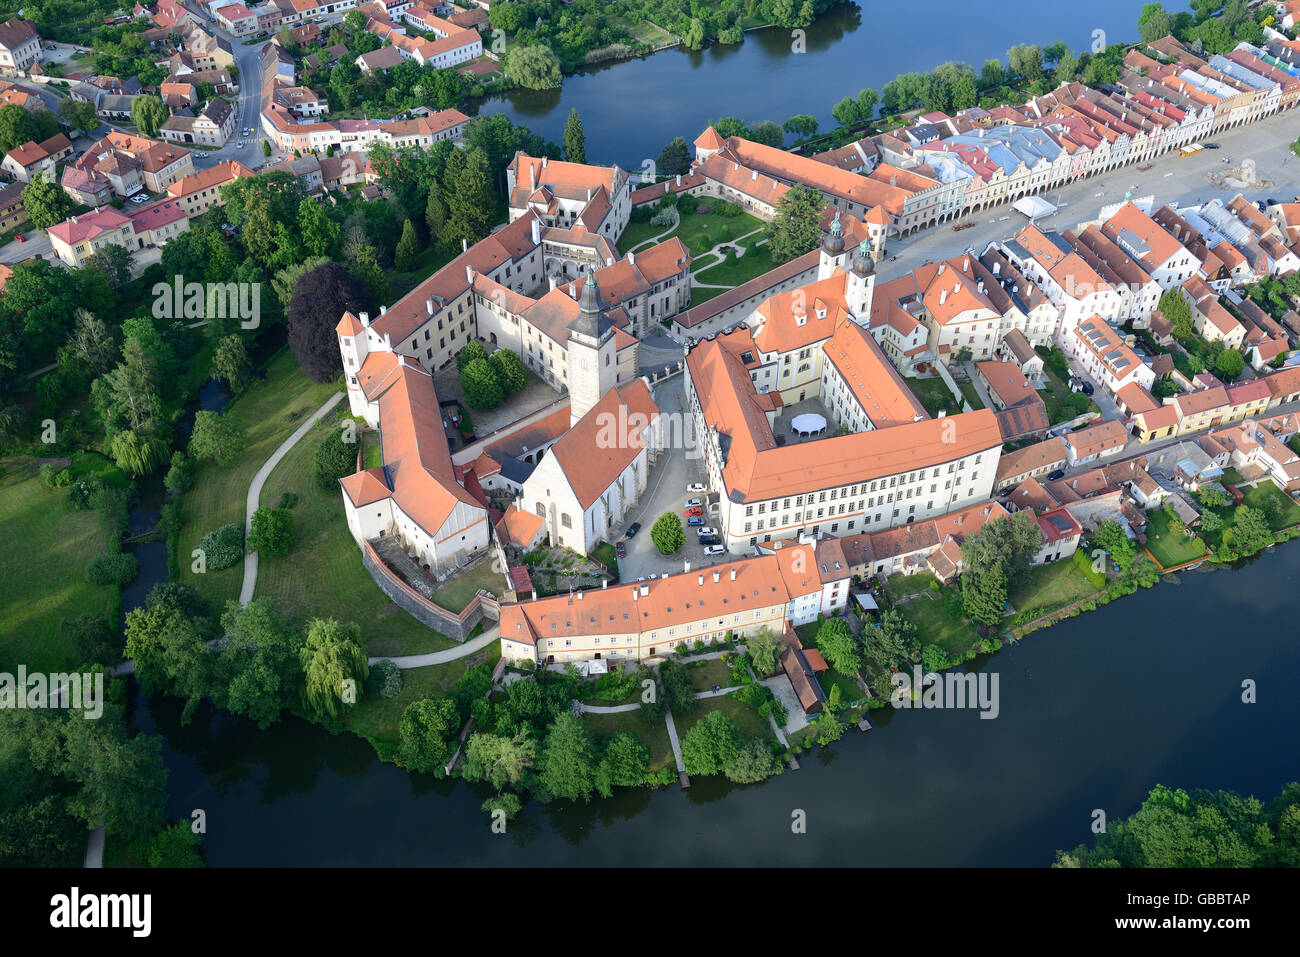 VISTA AEREA. Città medievale con una notevole architettura, patrimonio dell'umanità dell'UNESCO. Telč, Distretto di Jihlava, Moravia, Repubblica Ceca. Foto Stock